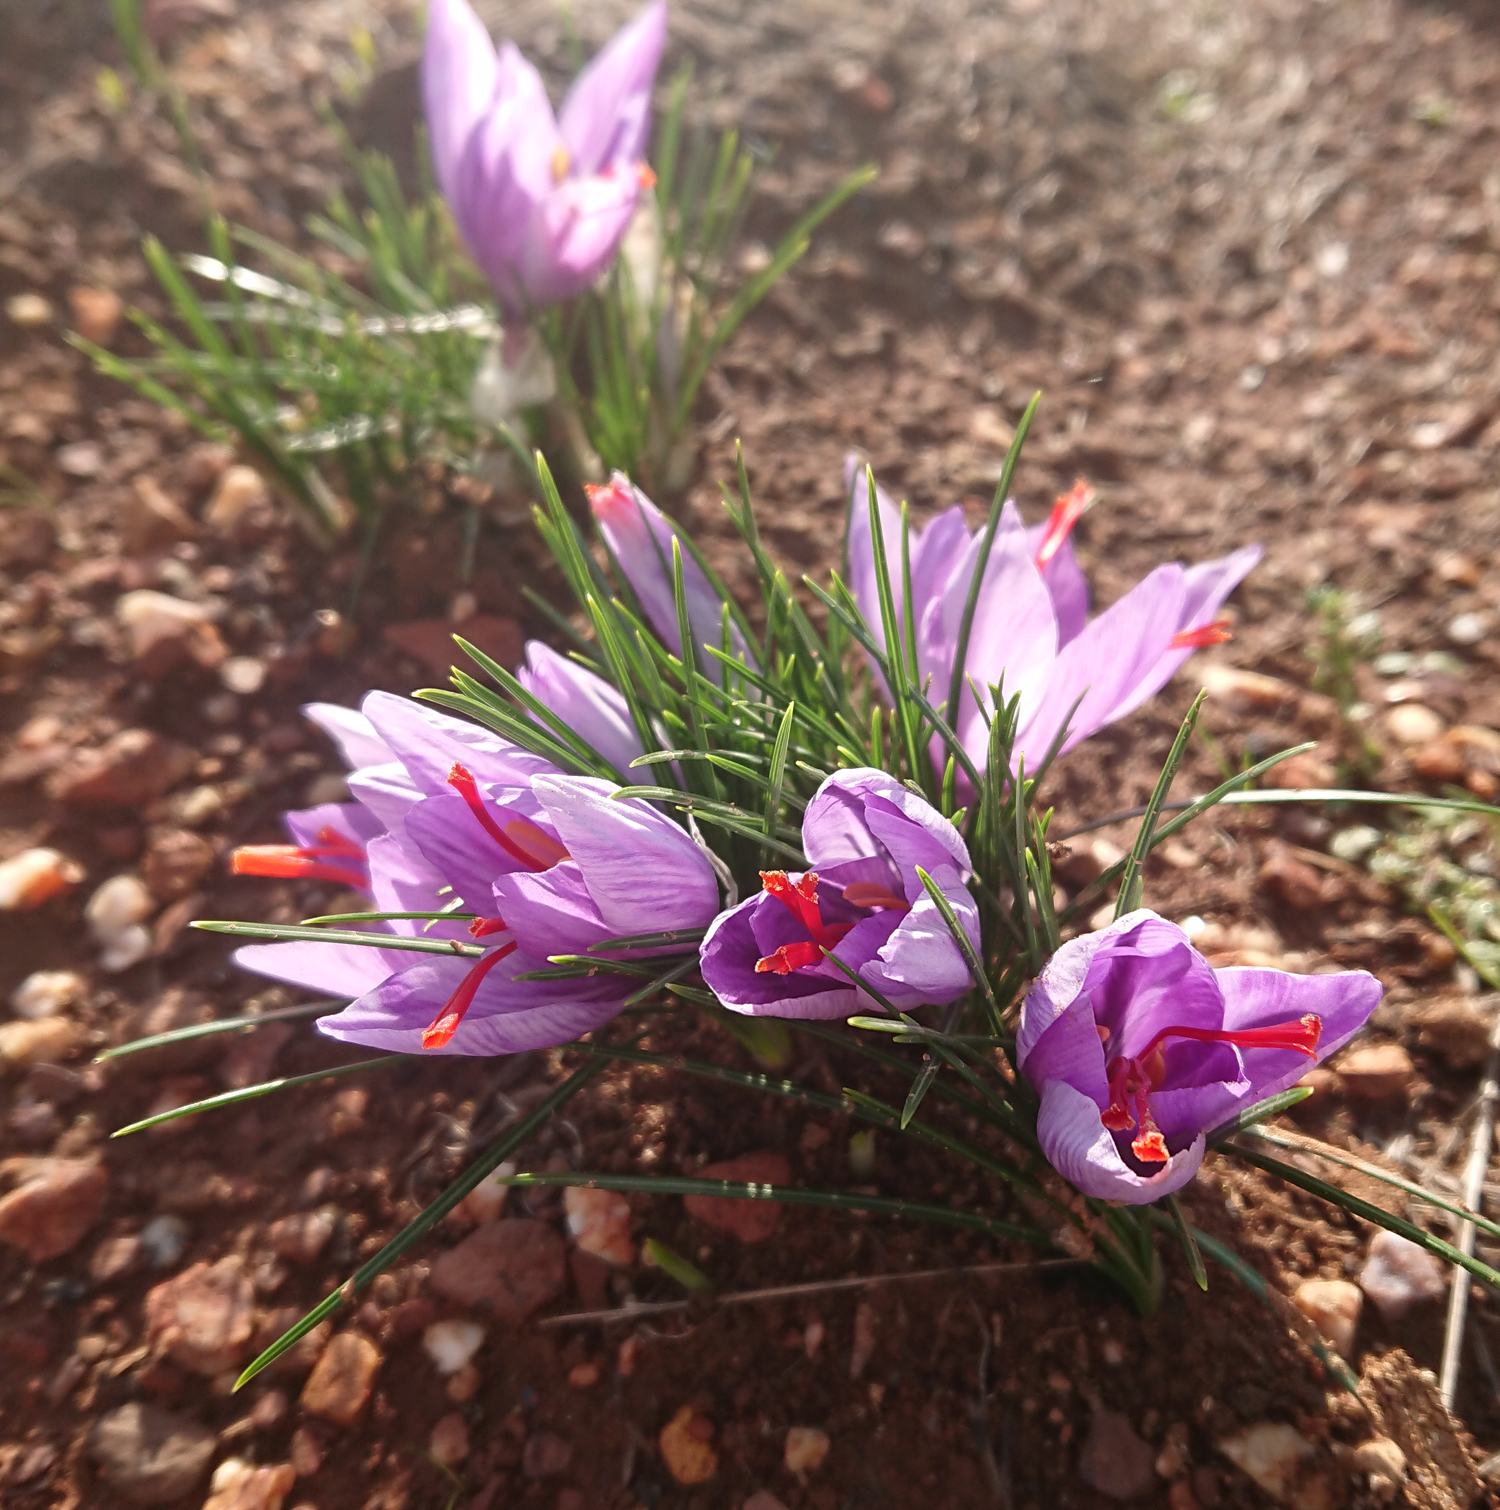 Saffron flowering